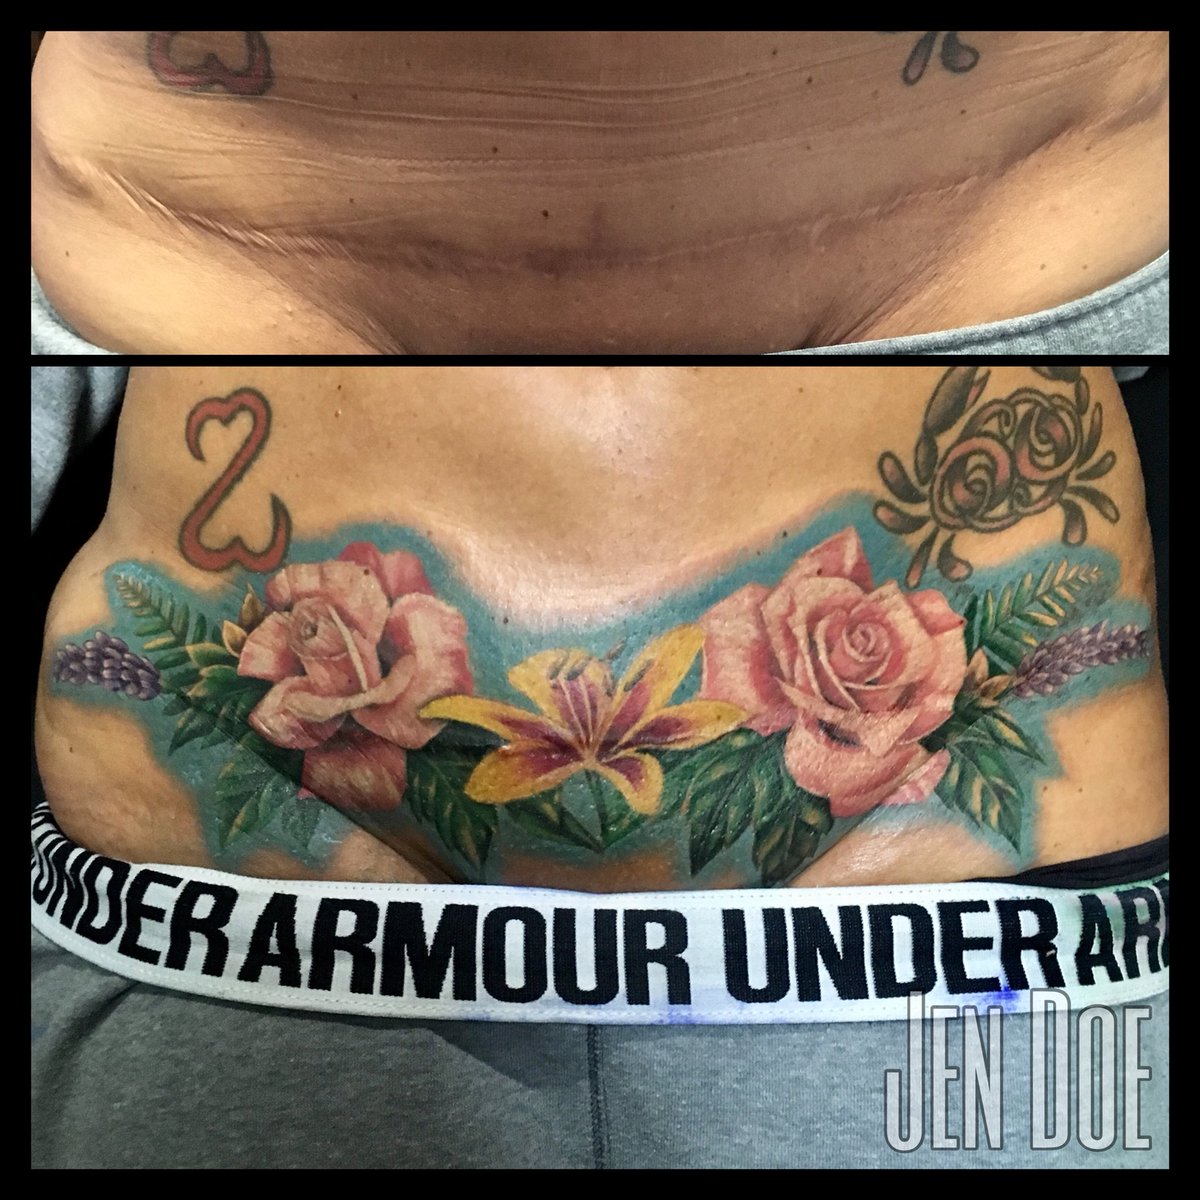 Jen Doe on Twitter Scar cover up  tattoo art scarcamouflage chicago  flowers femaletattooer tattooartist httpstcoRVlO70jZTO  Twitter